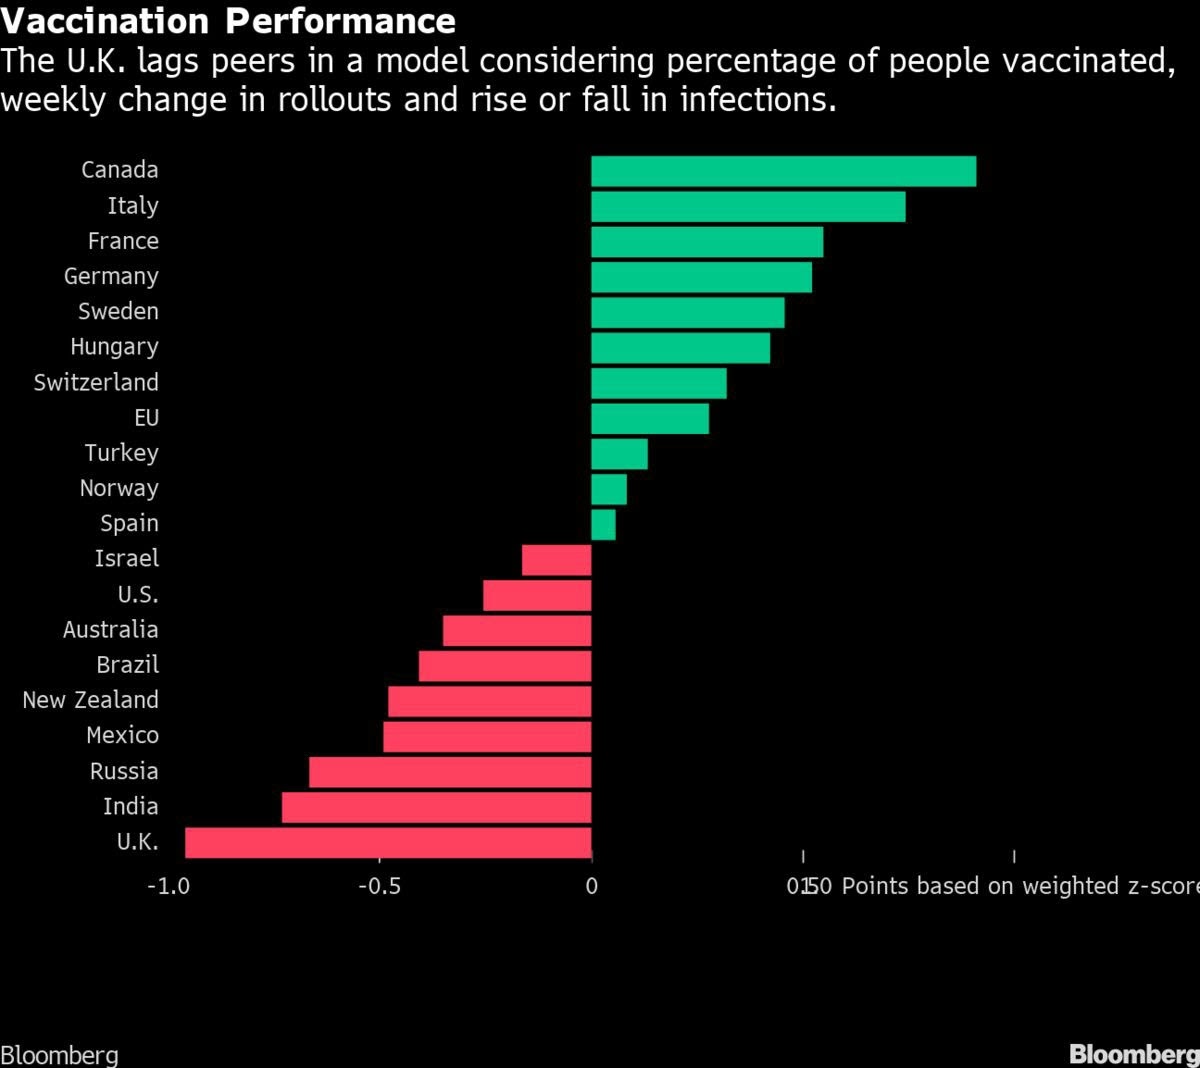 المملكة المتحدة تتخلف عن نظرائها في النسبة المئوية للأشخاص الذين تم تطعيمهم وارتفاع أو انخفاض الإصابات